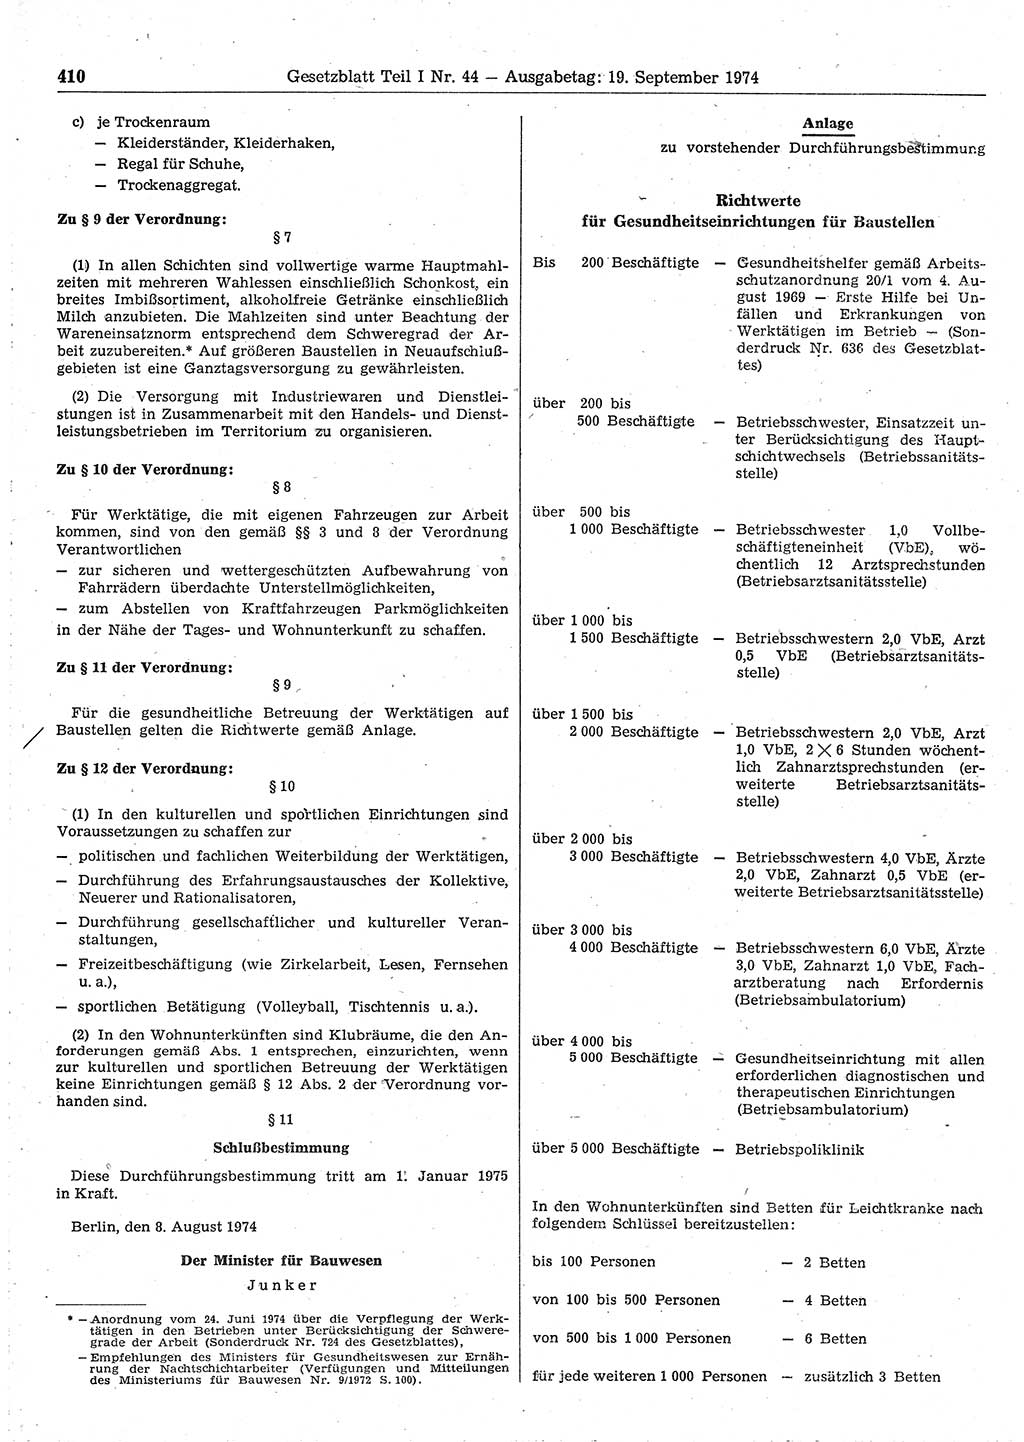 Gesetzblatt (GBl.) der Deutschen Demokratischen Republik (DDR) Teil Ⅰ 1974, Seite 410 (GBl. DDR Ⅰ 1974, S. 410)